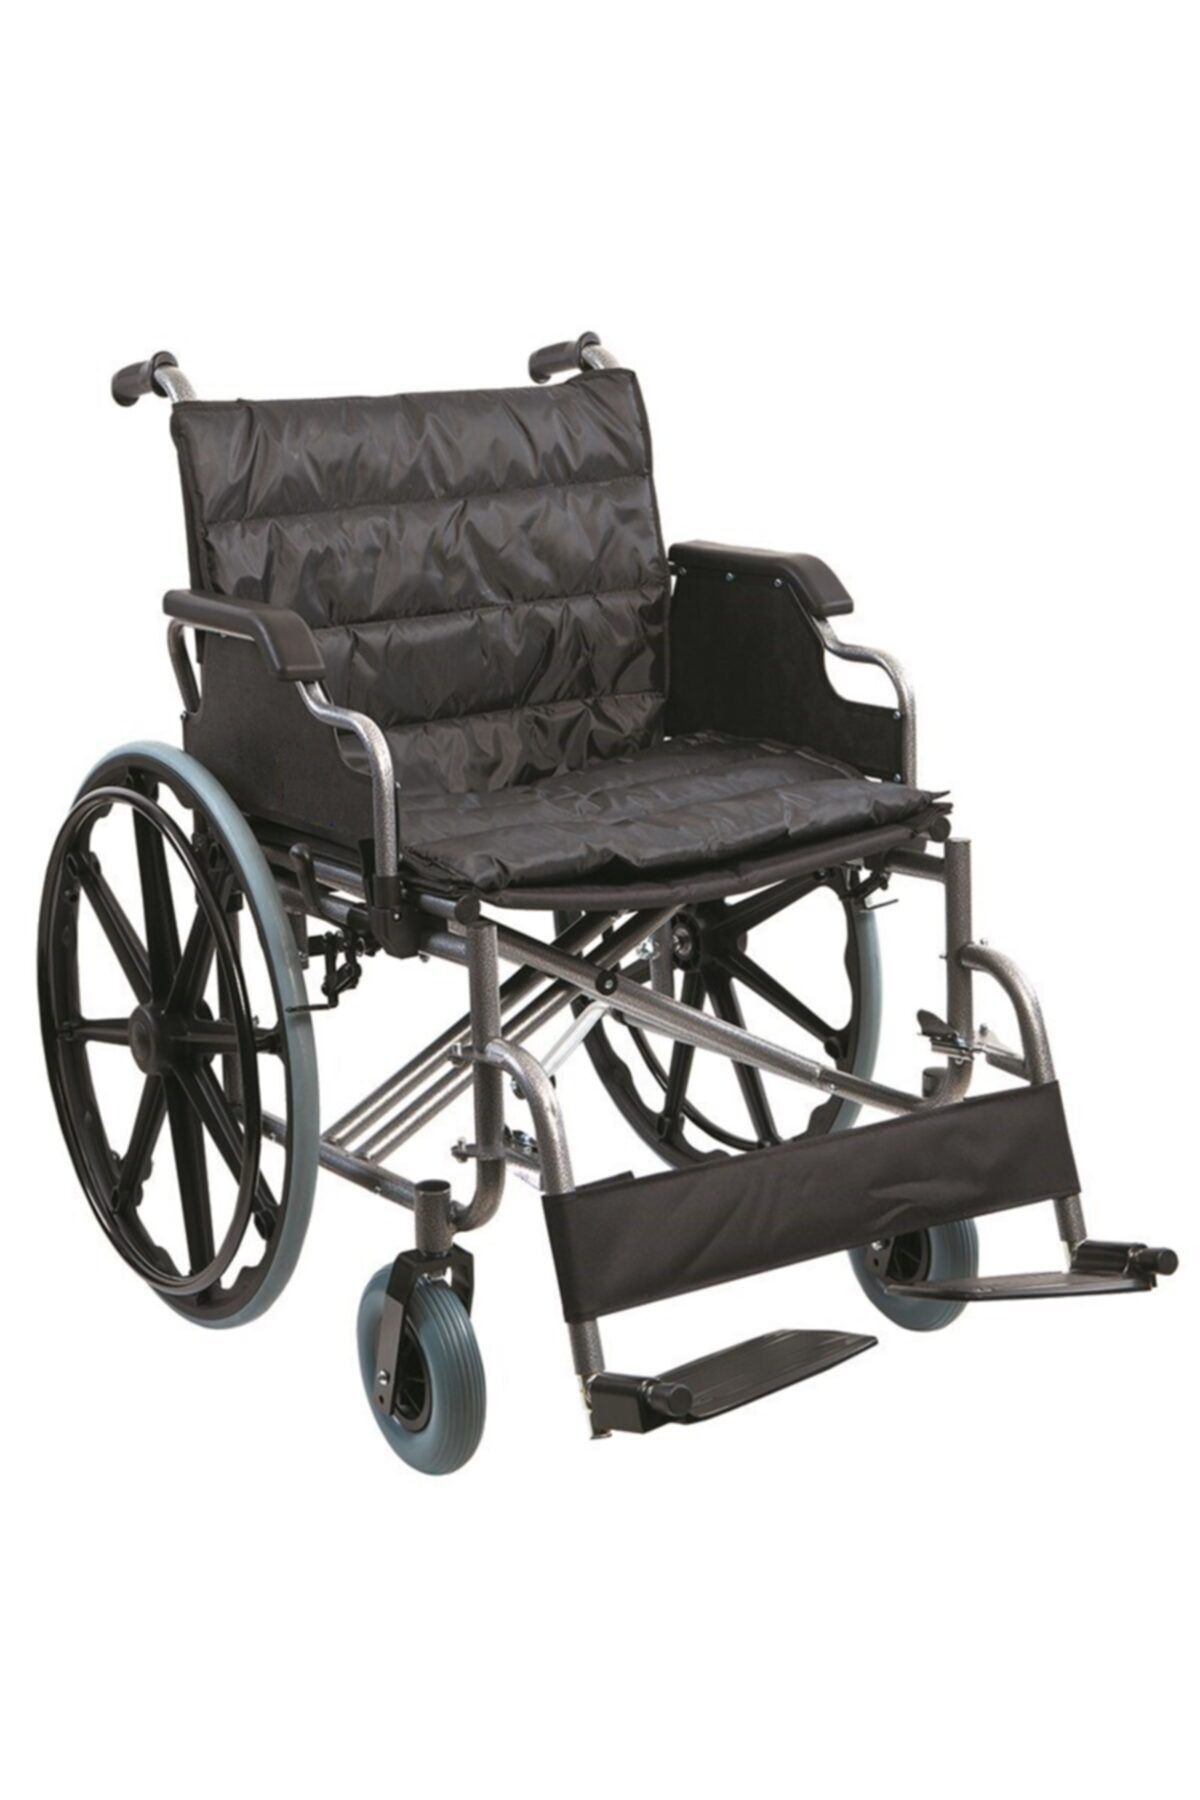 POYLİN P114 Büyük Beden Tekerlekli Sandalye (55cm)